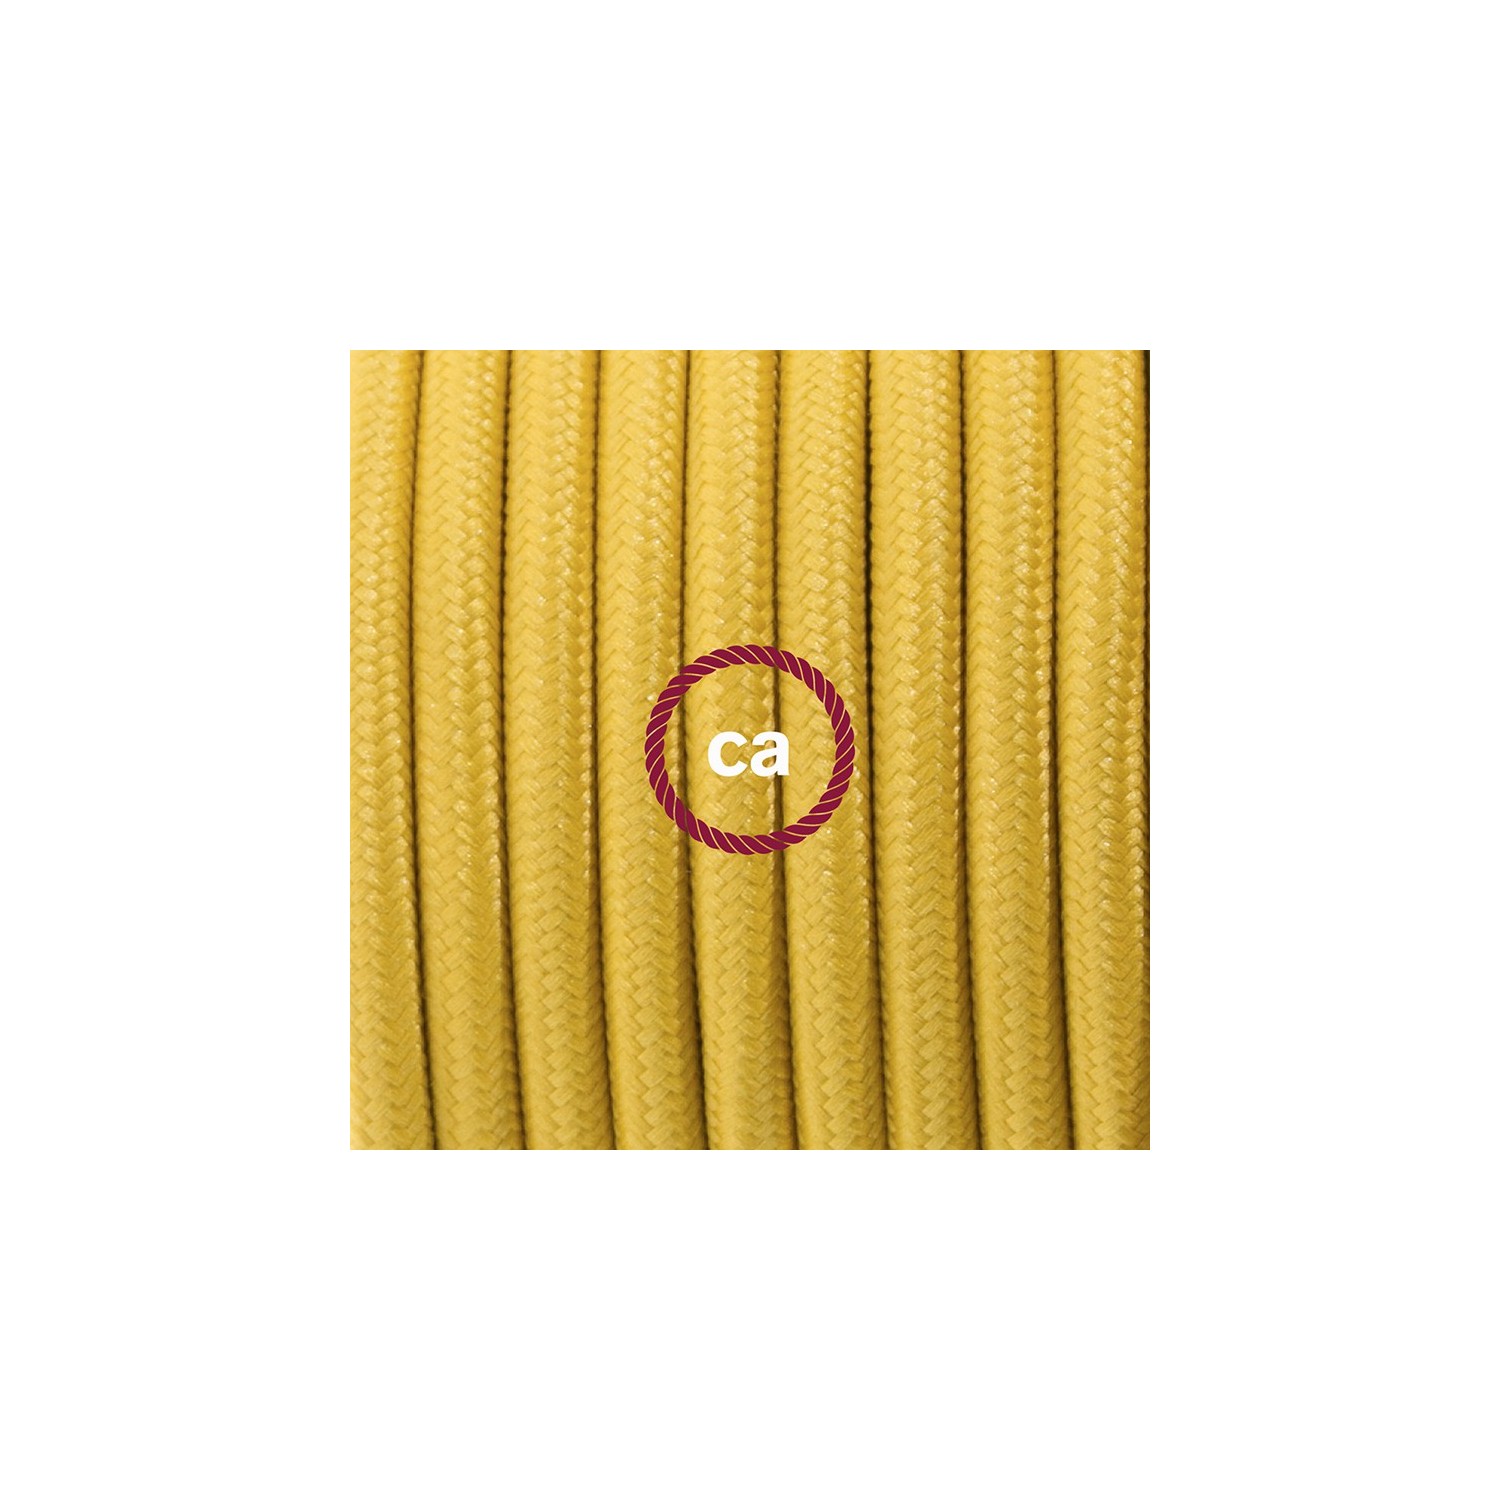 Ronde flexibele textielkabel van viscose met schakelaar en stekker. RM25 - mosterd geel 1,80 m.